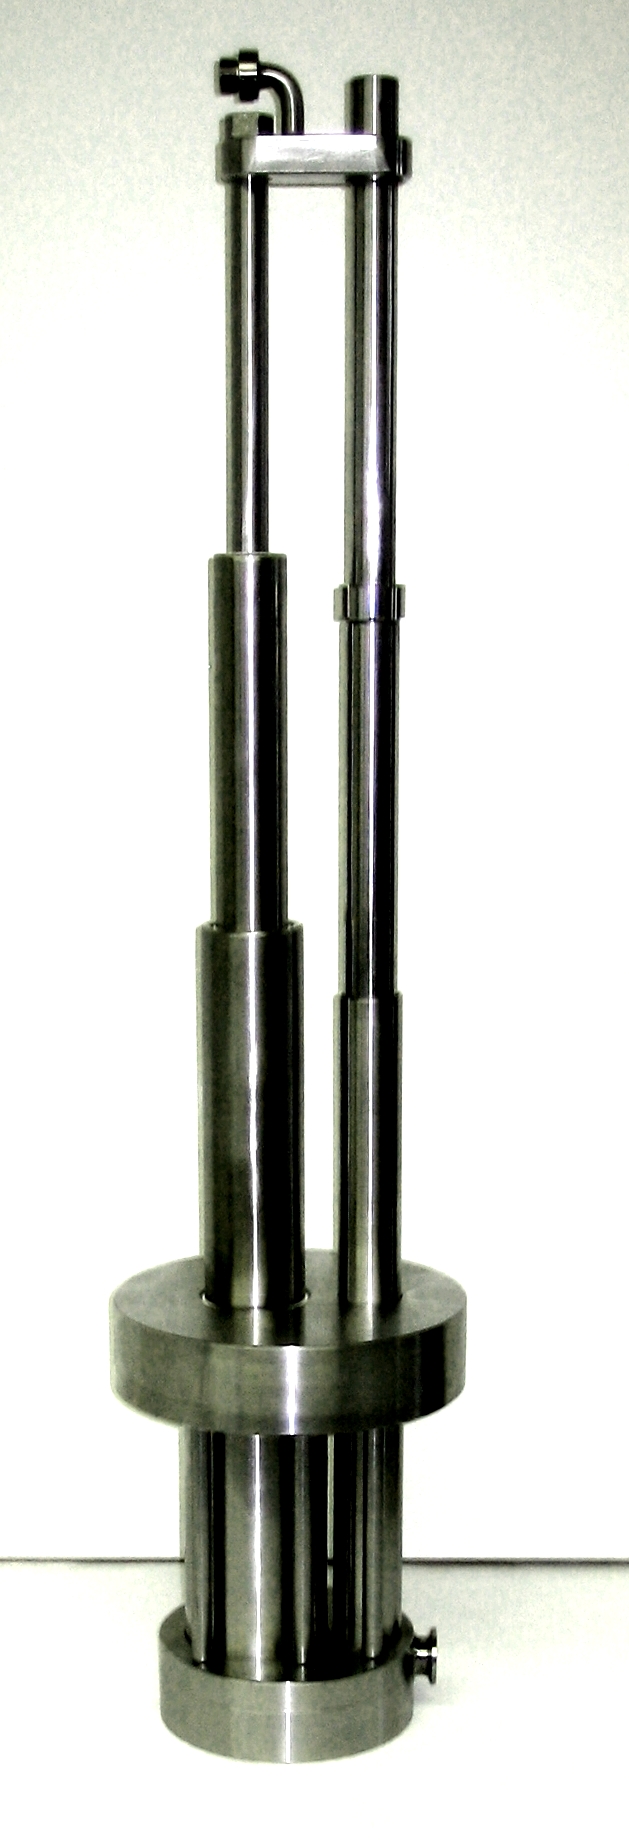 Dreistufiger Pneumatik Edelstahlteleskopzylinder; DIA=30/54/80mm; doppeltwirkend,ausgefahrene Position